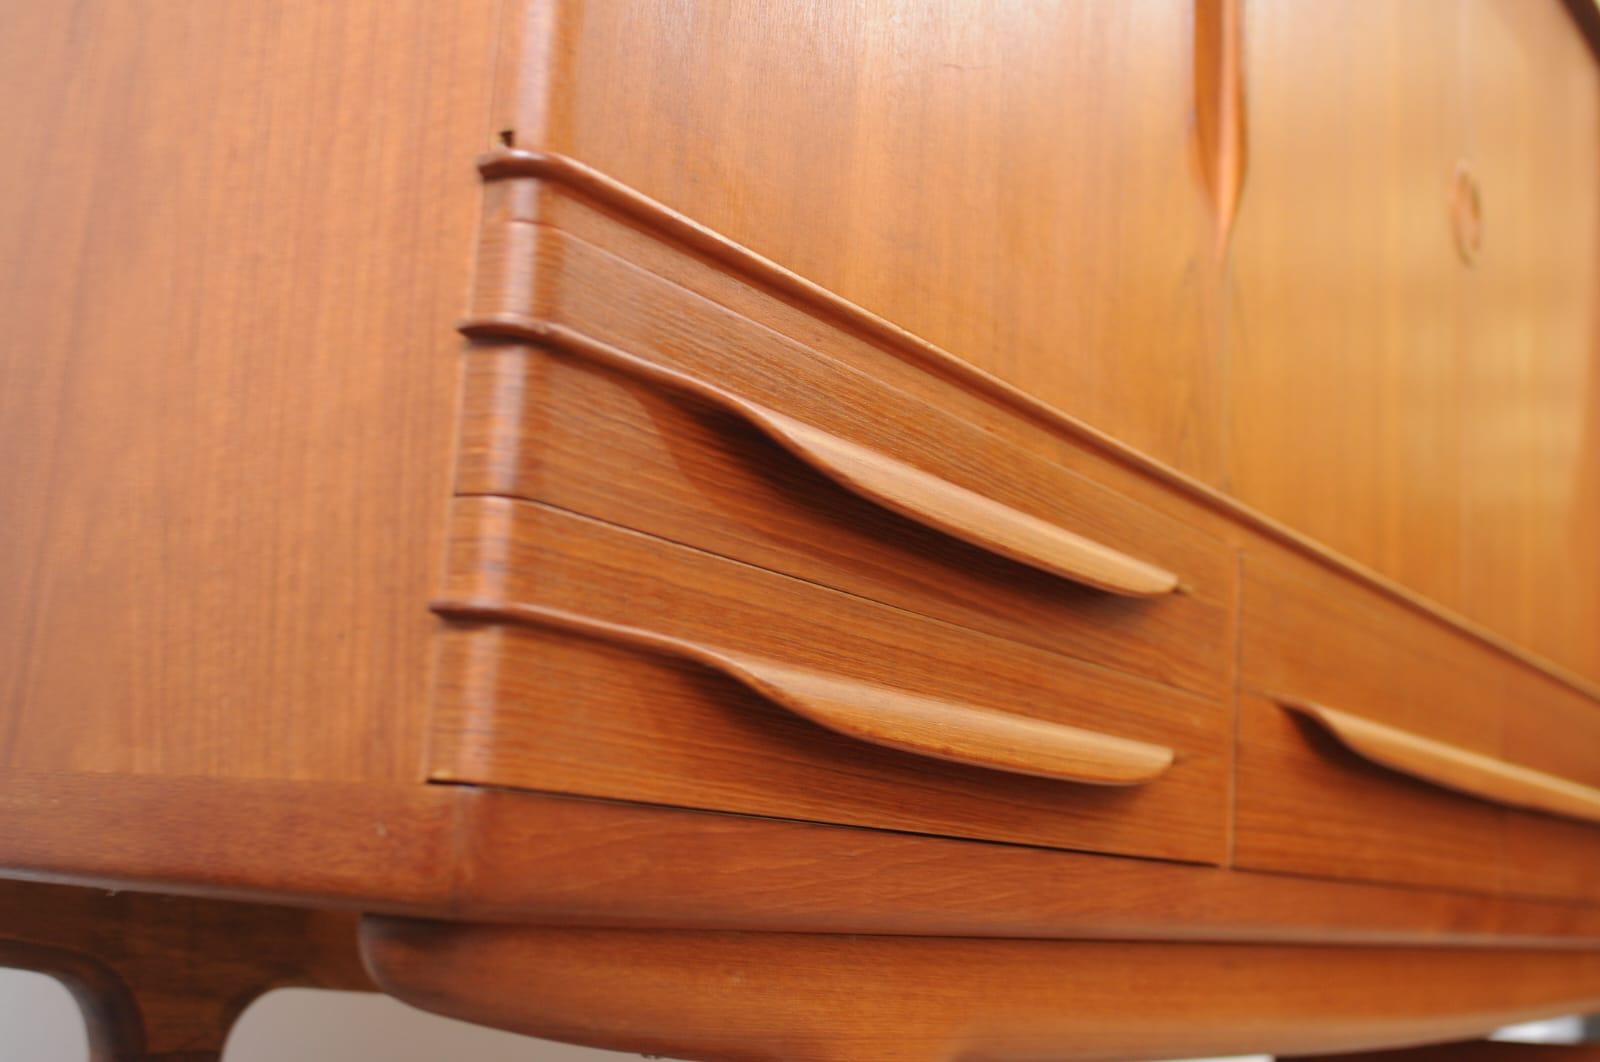 1960sd Buffet fabriqué par Sejling Skabe, conçu par EW Bach au Danemark
Bois de palissandre massif, comprend un meuble de rangement pour le bar

Ce buffet est un exemple emblématique du mobilier danois du milieu du siècle, tant au niveau de la